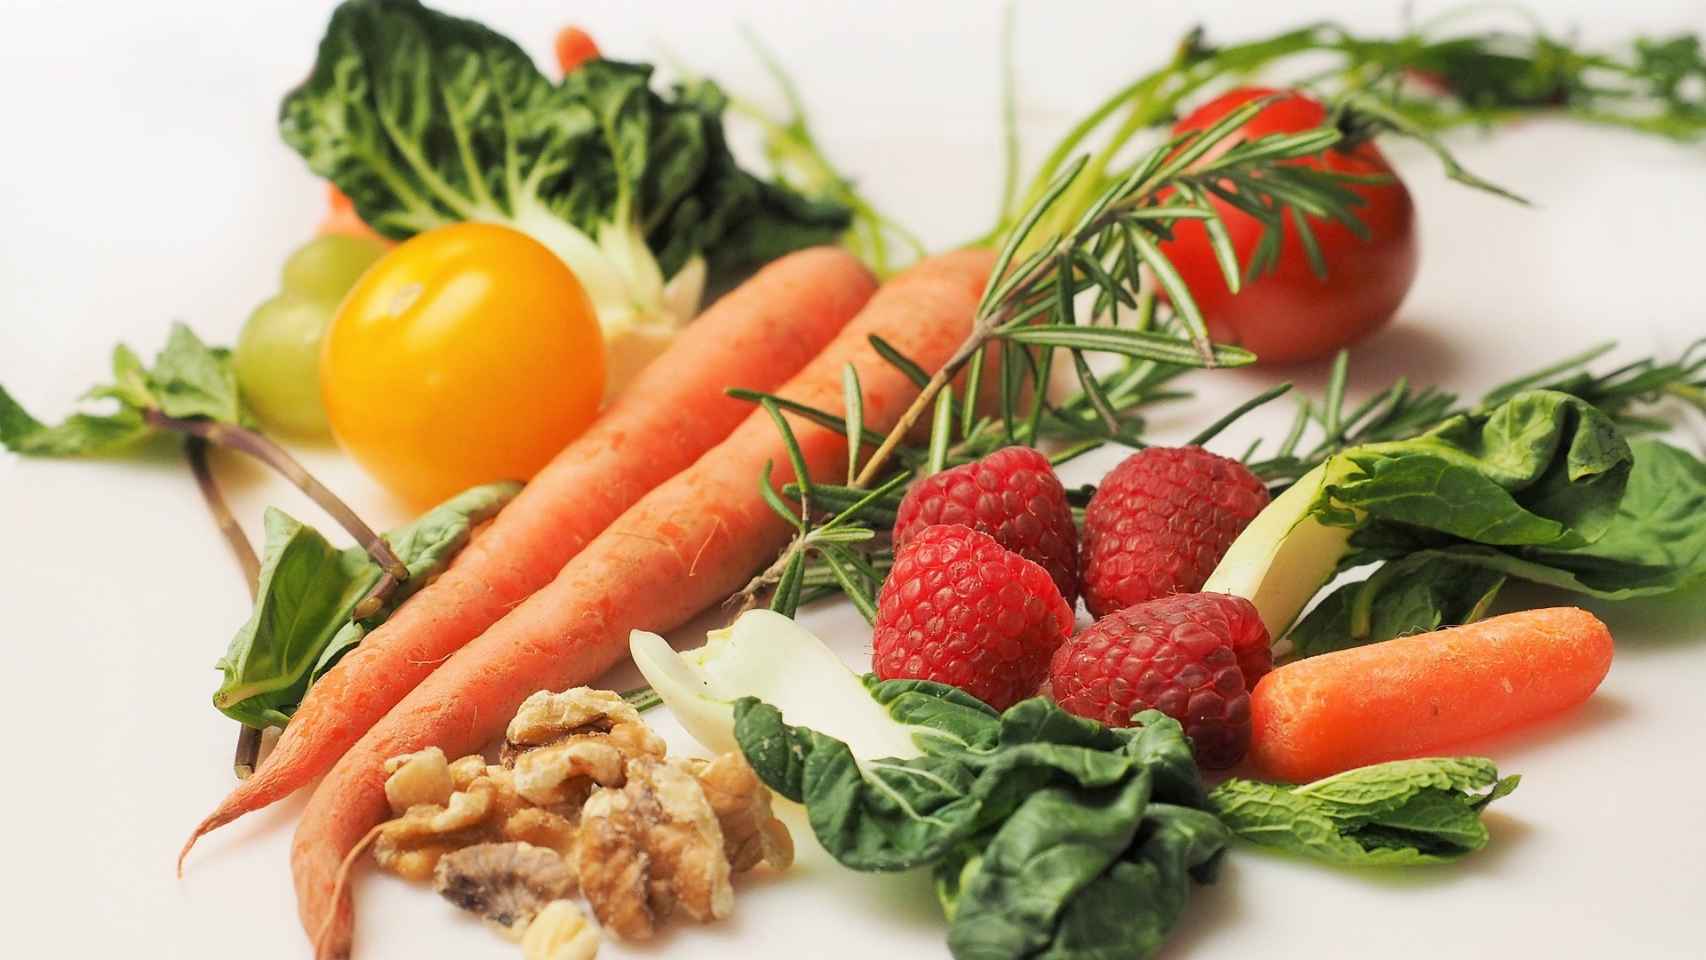 Las verduras y los frutos secos son algunos de los alimentos con mayor efecto saciante.